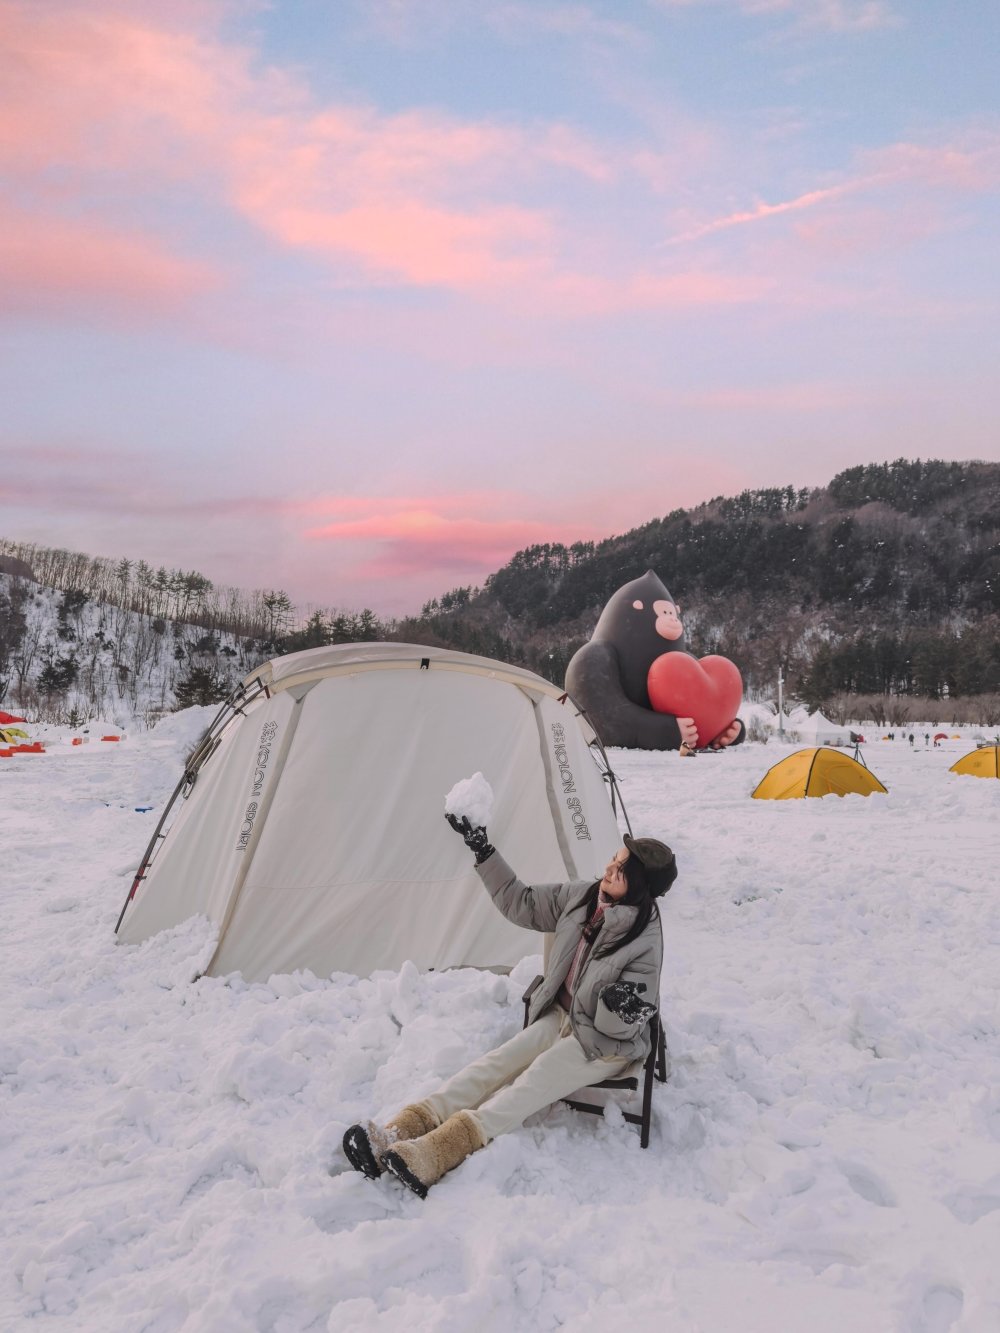 축제기간 중 나리분지에서는 누구나 캠핑장비 없이도 캠핑이 가능하다.